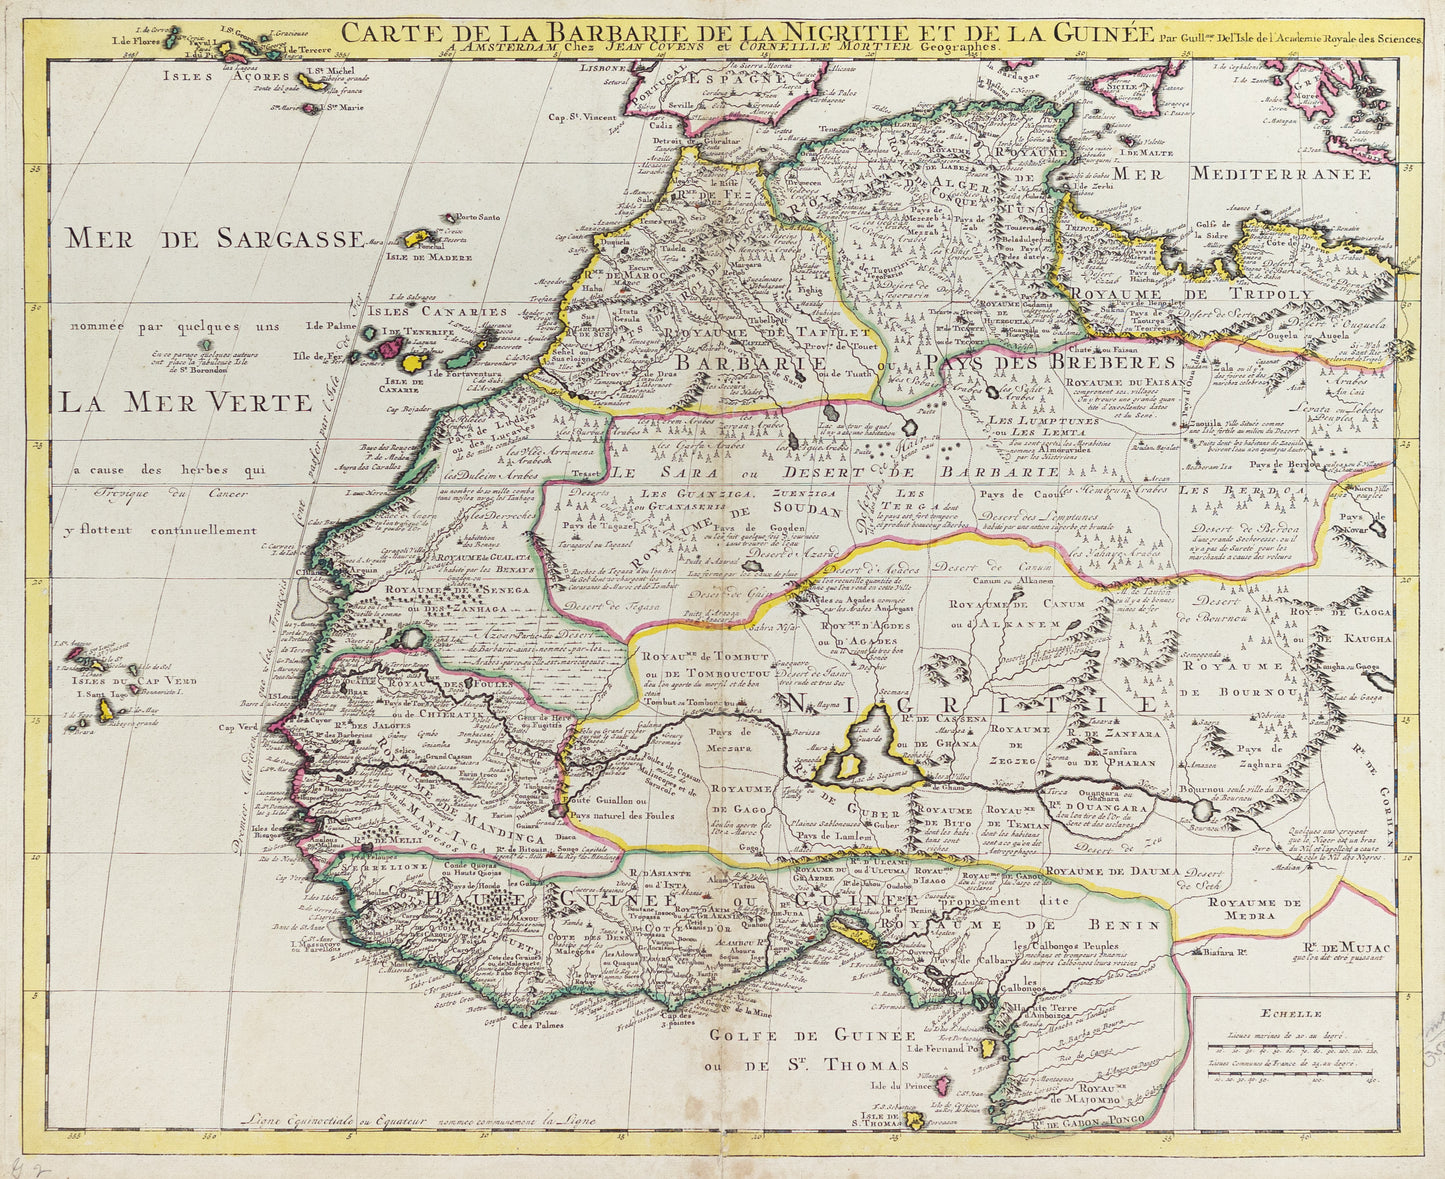 Delisle, Guillaume. Carte de la Barbarie de la Nigritie et de la Guinée. Amsterdam c. 1730 - 1742.